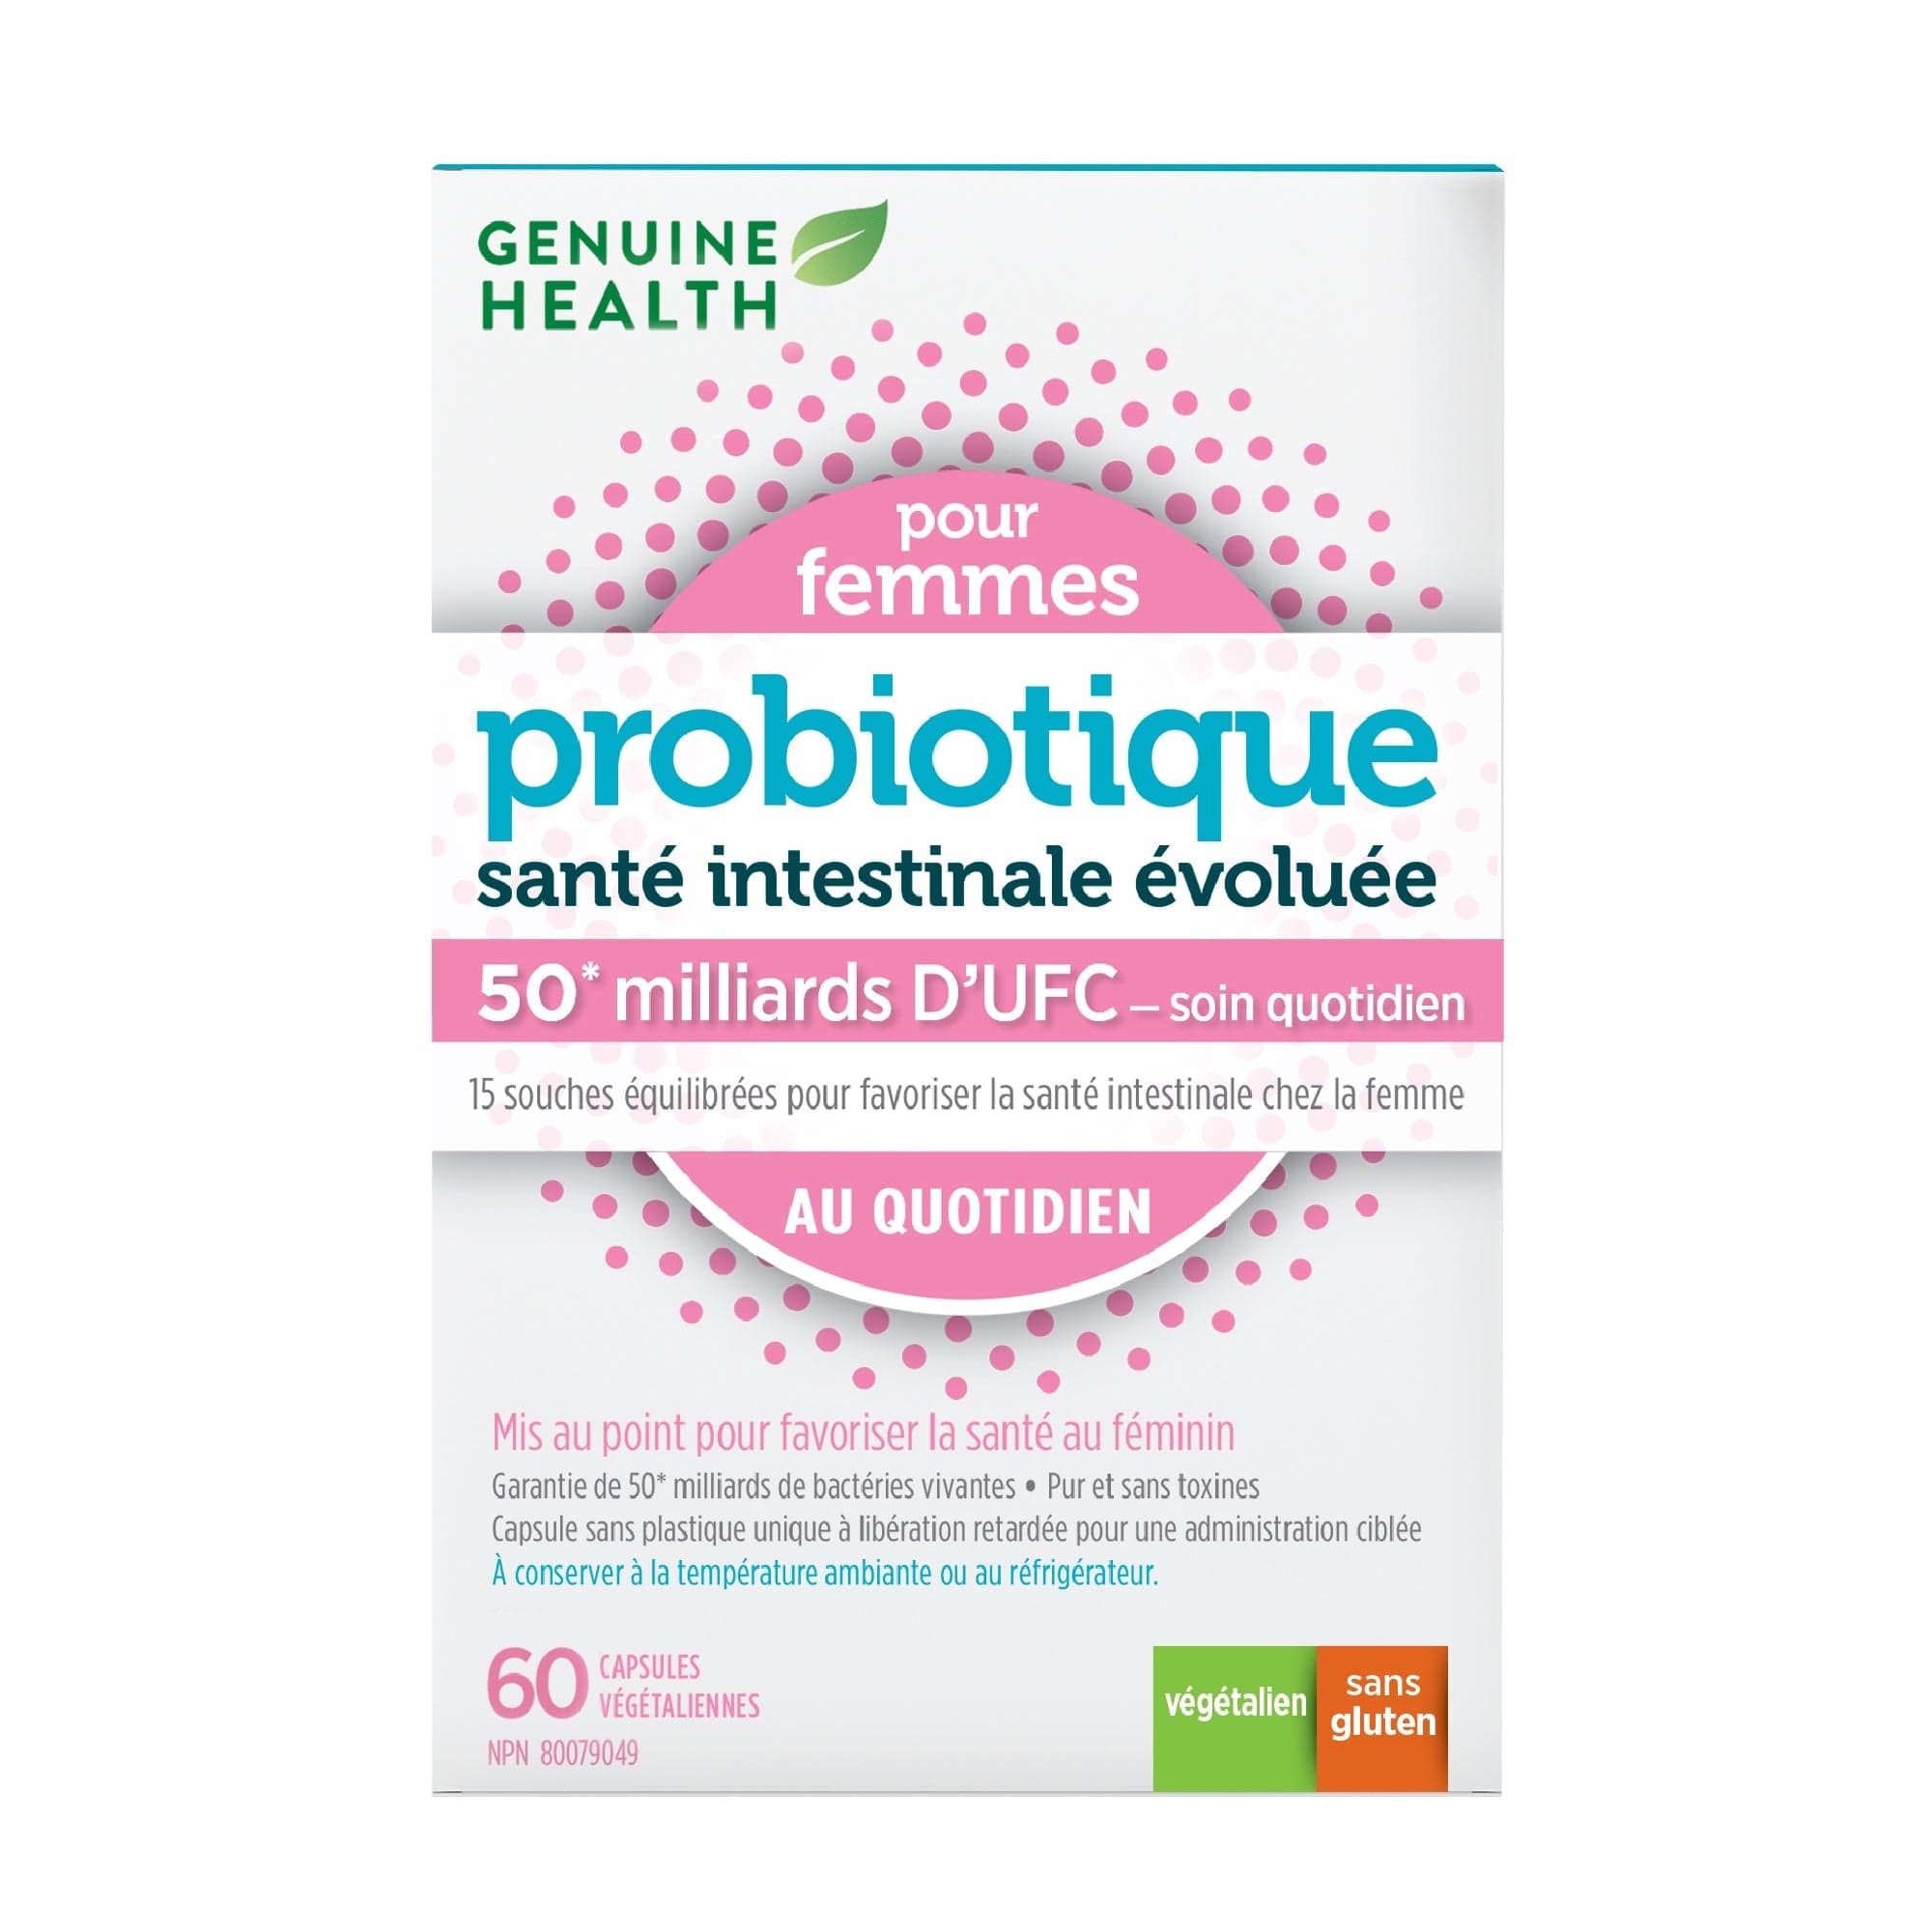 GENUINE HEALTH Suppléments Probiotique femme au quotidien (50 milliards D'UFC) 60vcaps
DATE DE PÉREMPTION : 31 AOÛT 2024